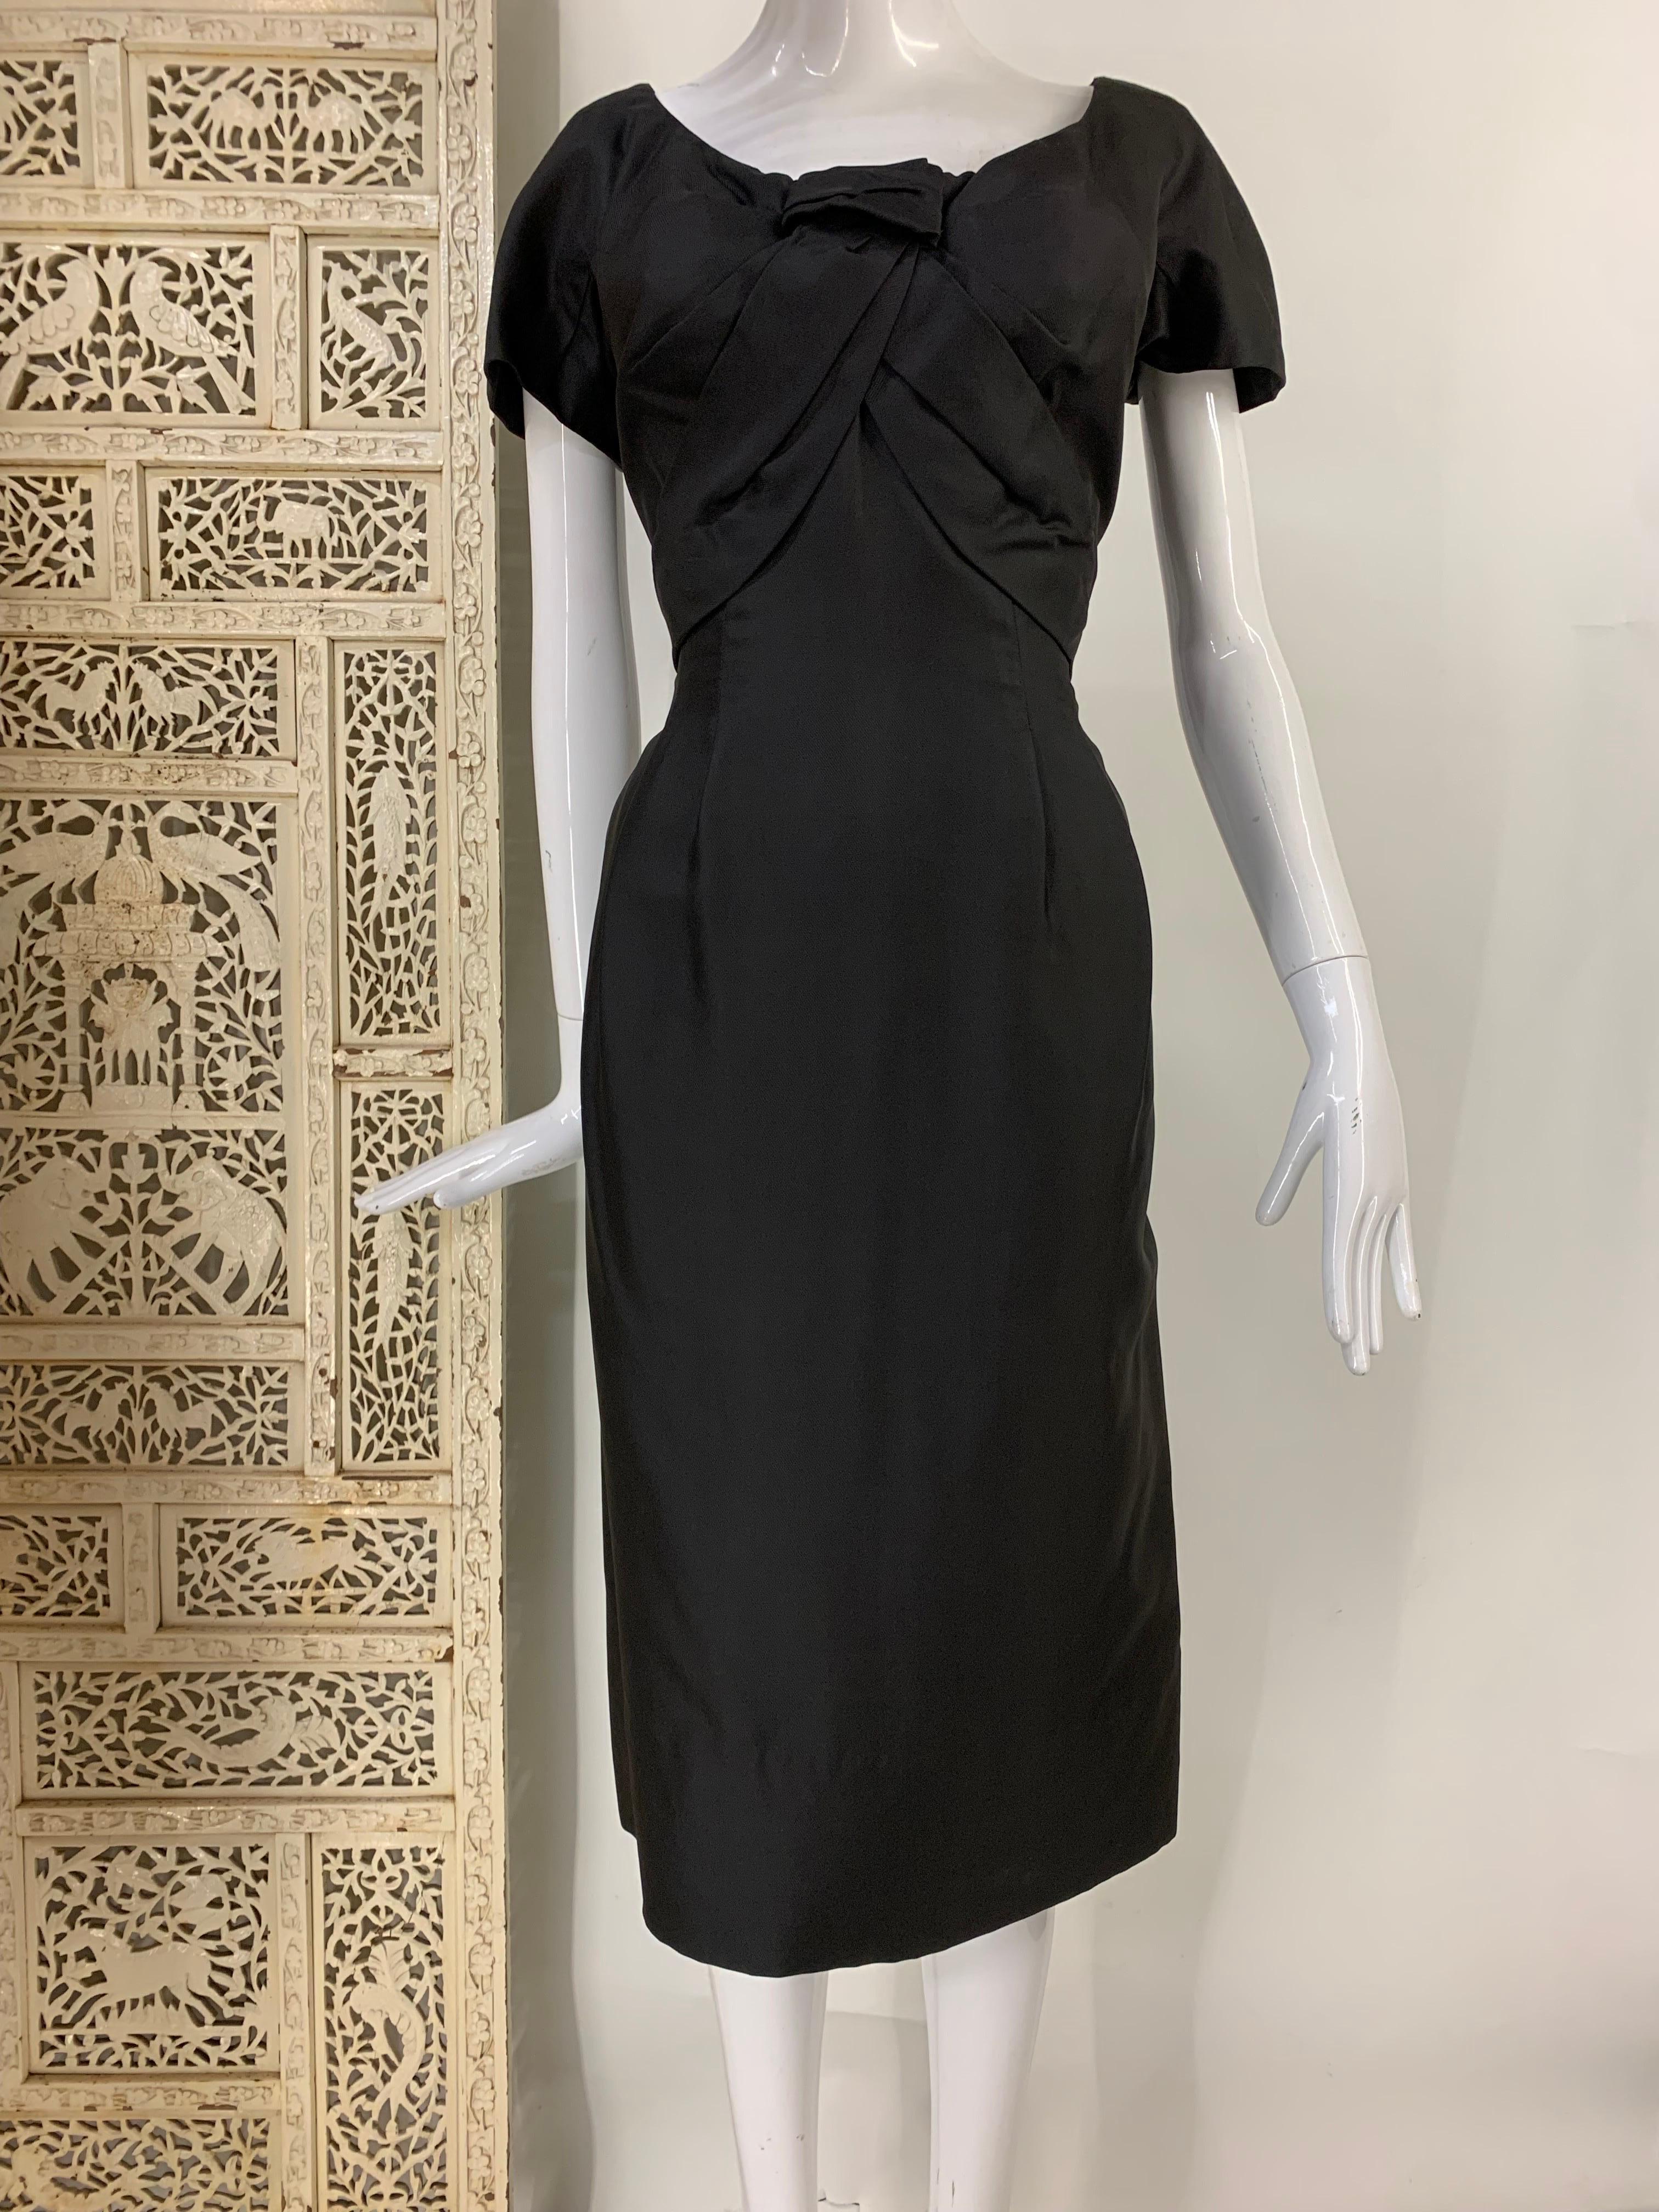 Petite robe fourreau noire de Christian Dior des années 1950 avec buste rentré et taille cintrée : Faille de soie noire mate de poids moyen. Pli d'aisance dans le dos. Fermeture éclair au dos. Entièrement doublé en organza de soie. Beaucoup de